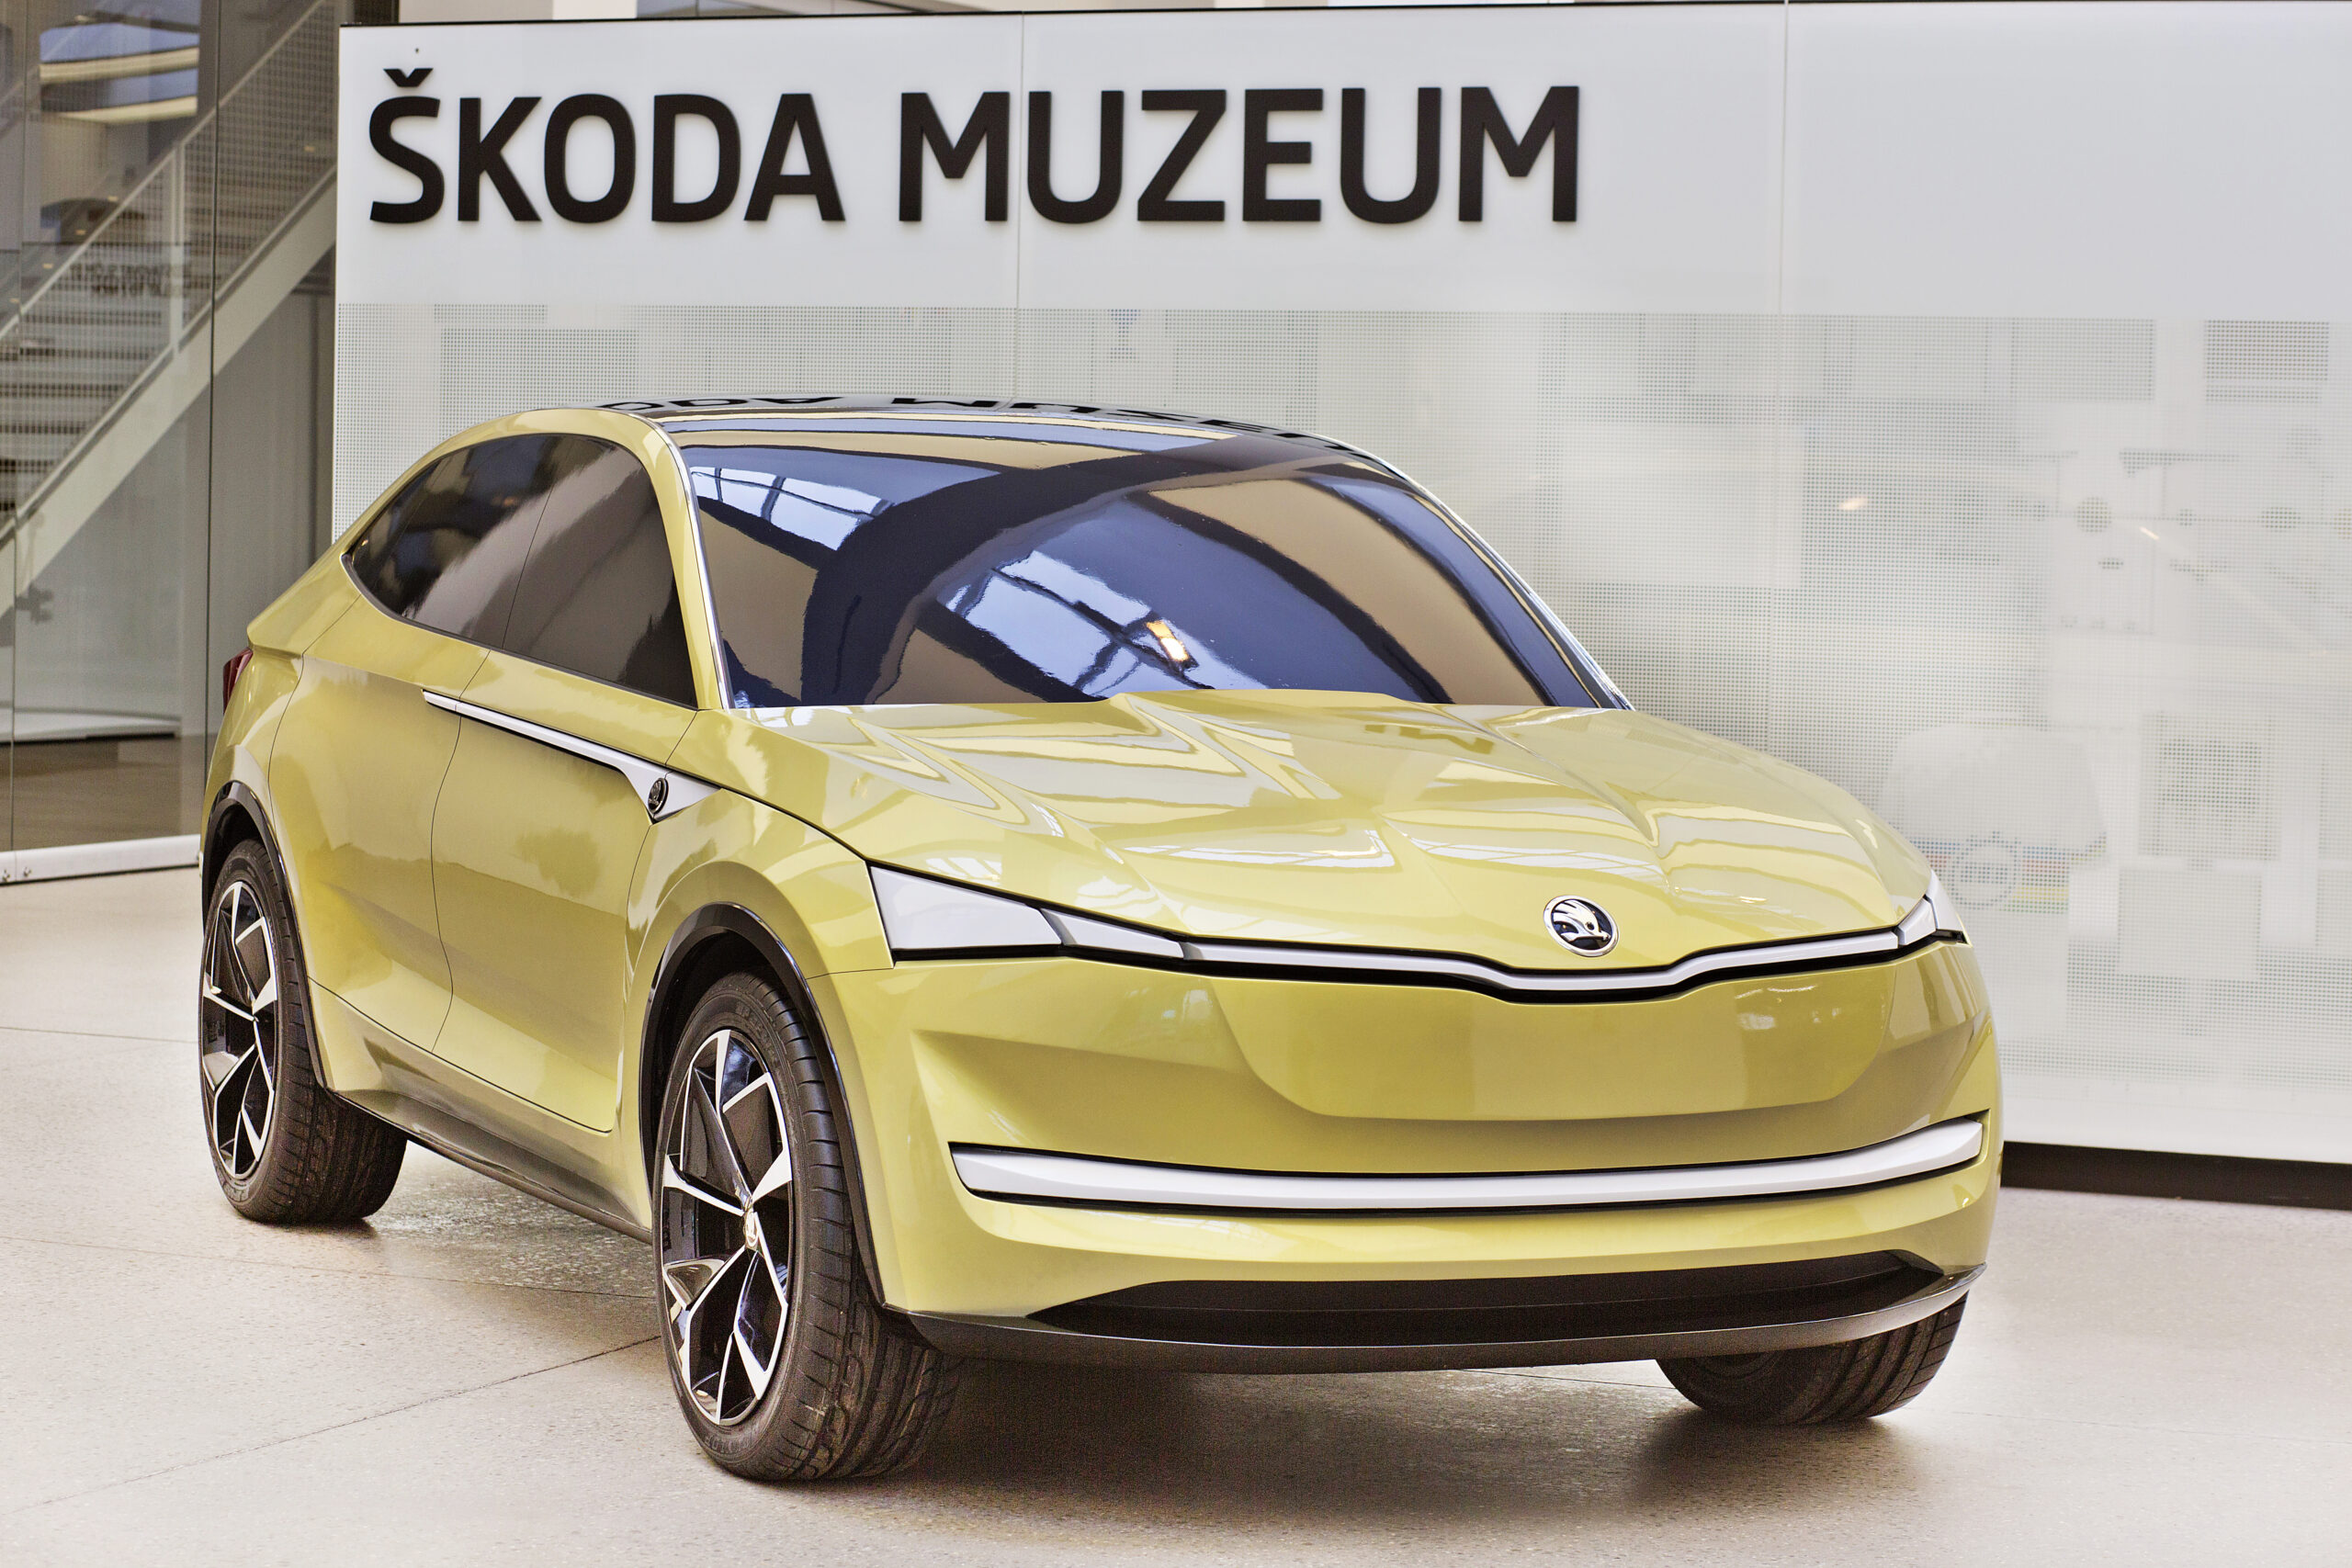 Hliněný model elektromobilu Škoda Vision E byl 21. dubna vystaven ve Škoda Muzeu v Mladé Boleslavi.